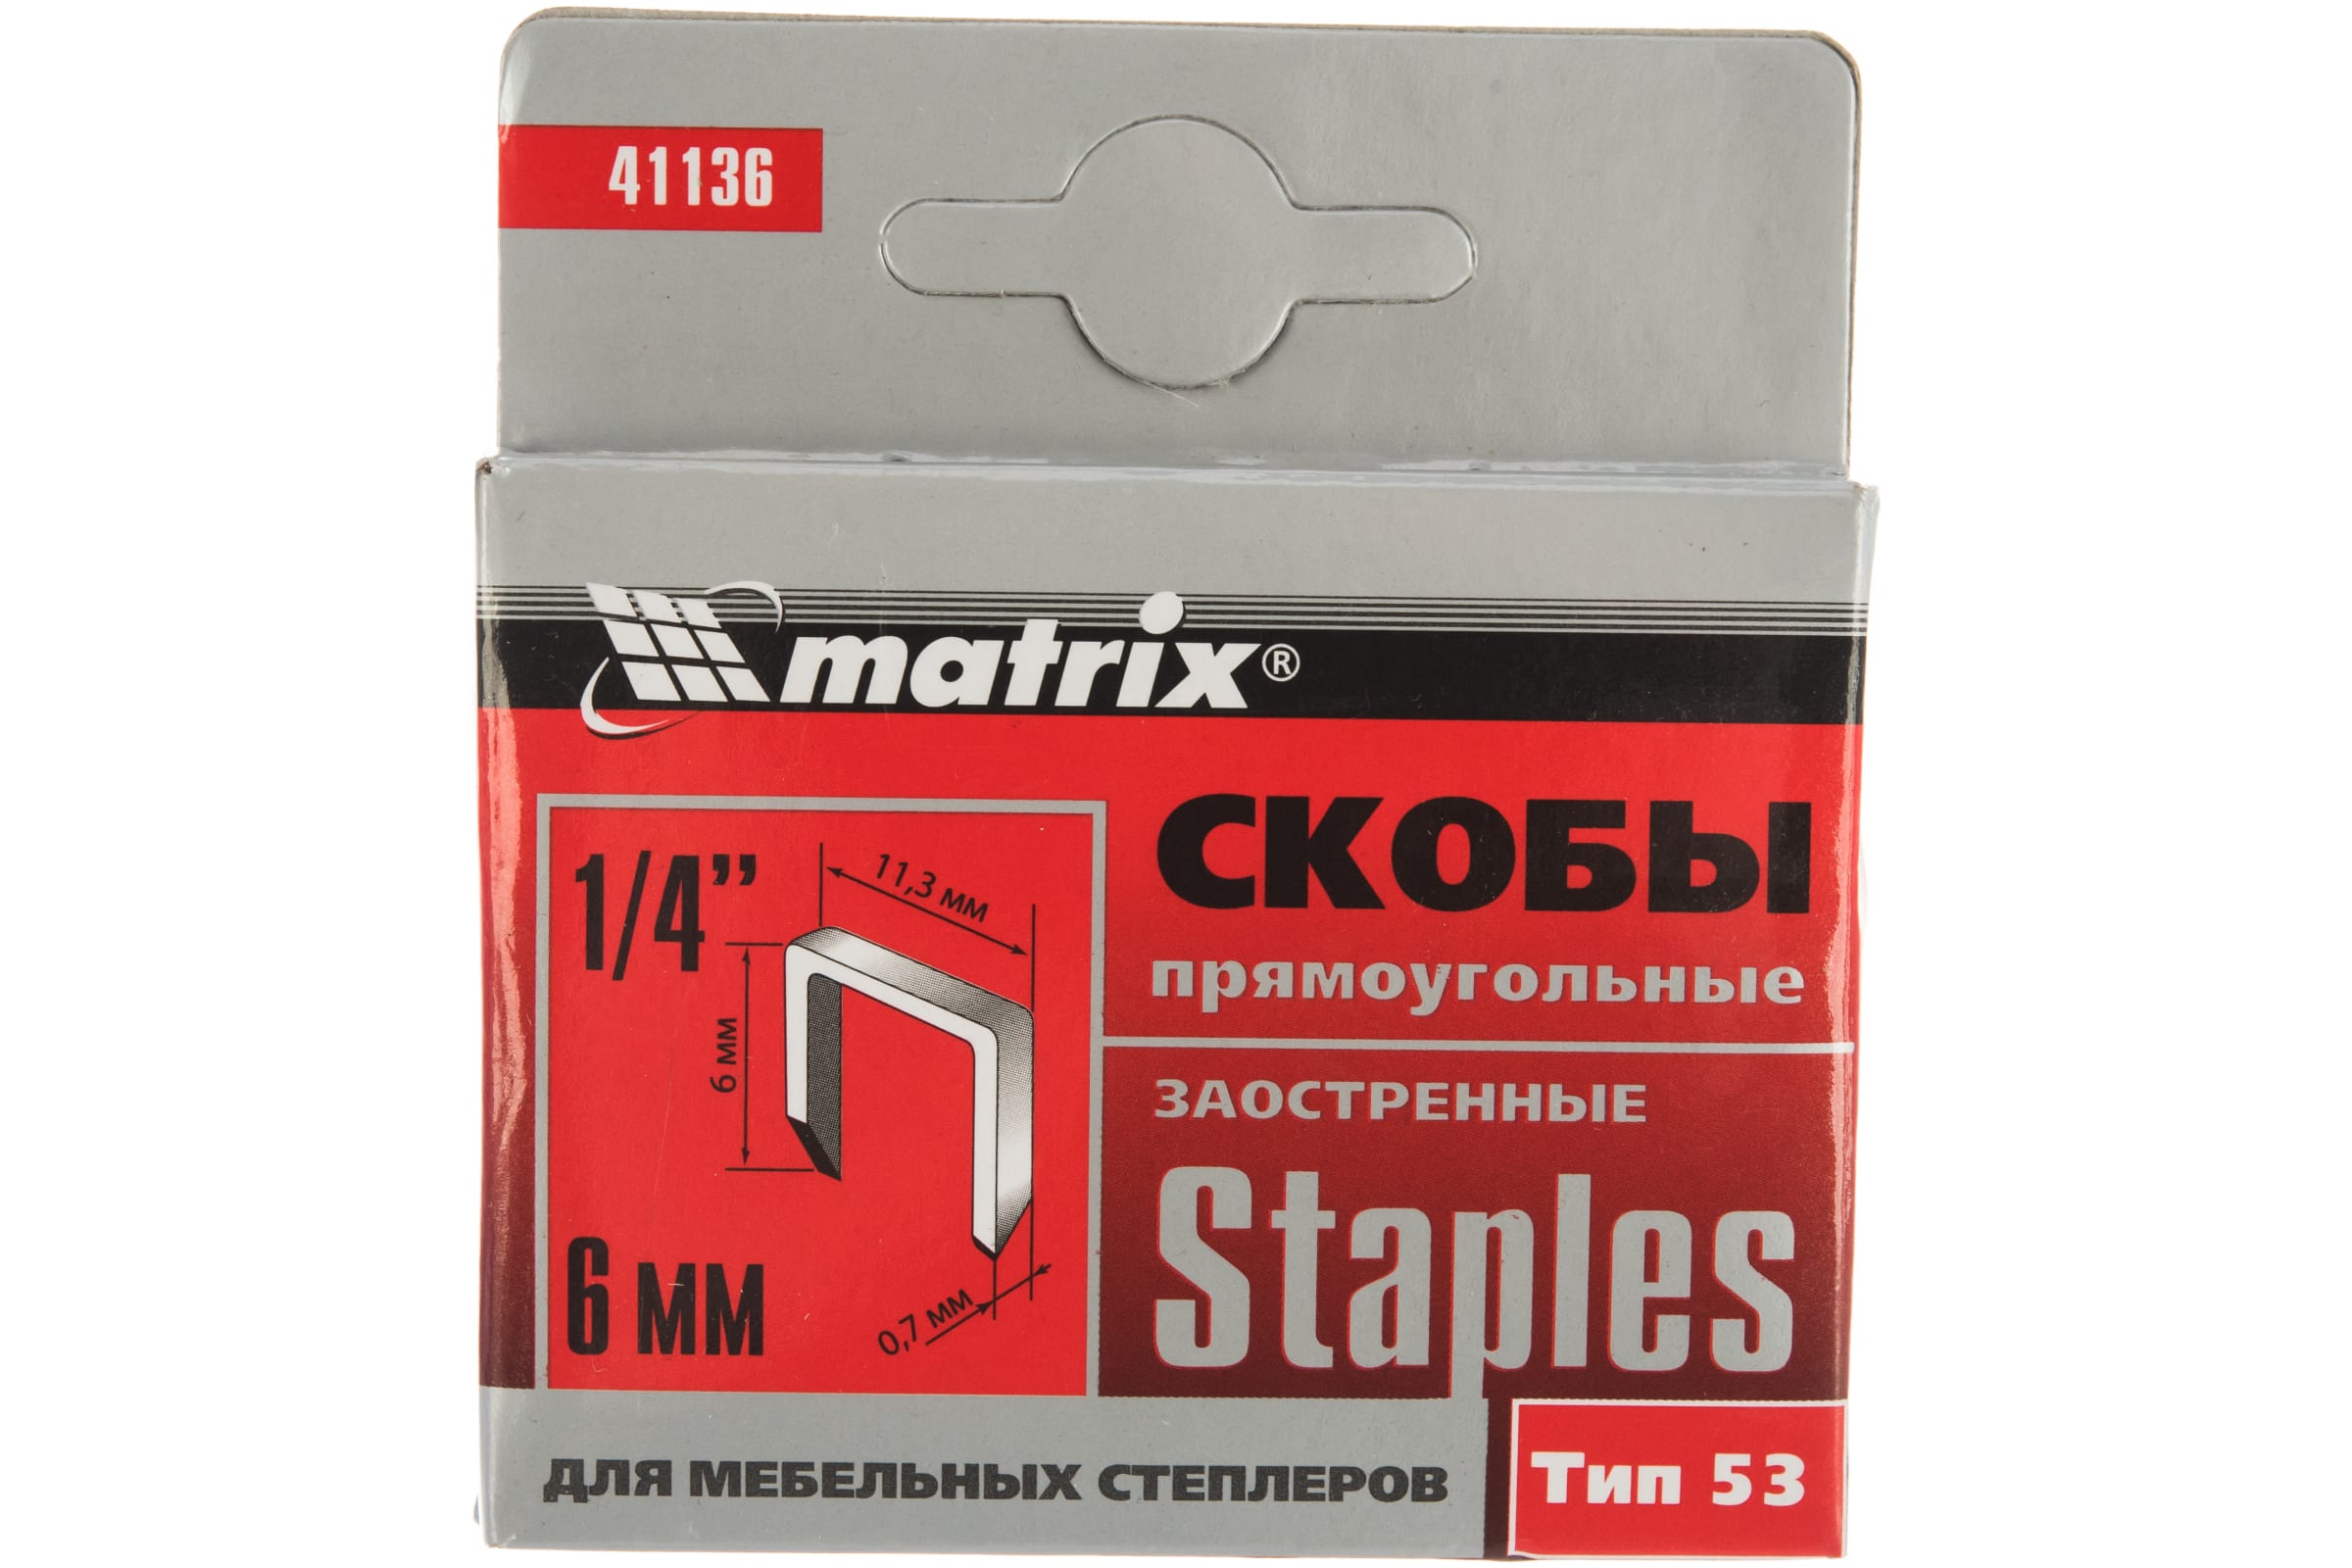 Скобы для электростеплера MATRIX 41136 скобы для электростеплера matrix 12 мм 36 1000 шт master 41412